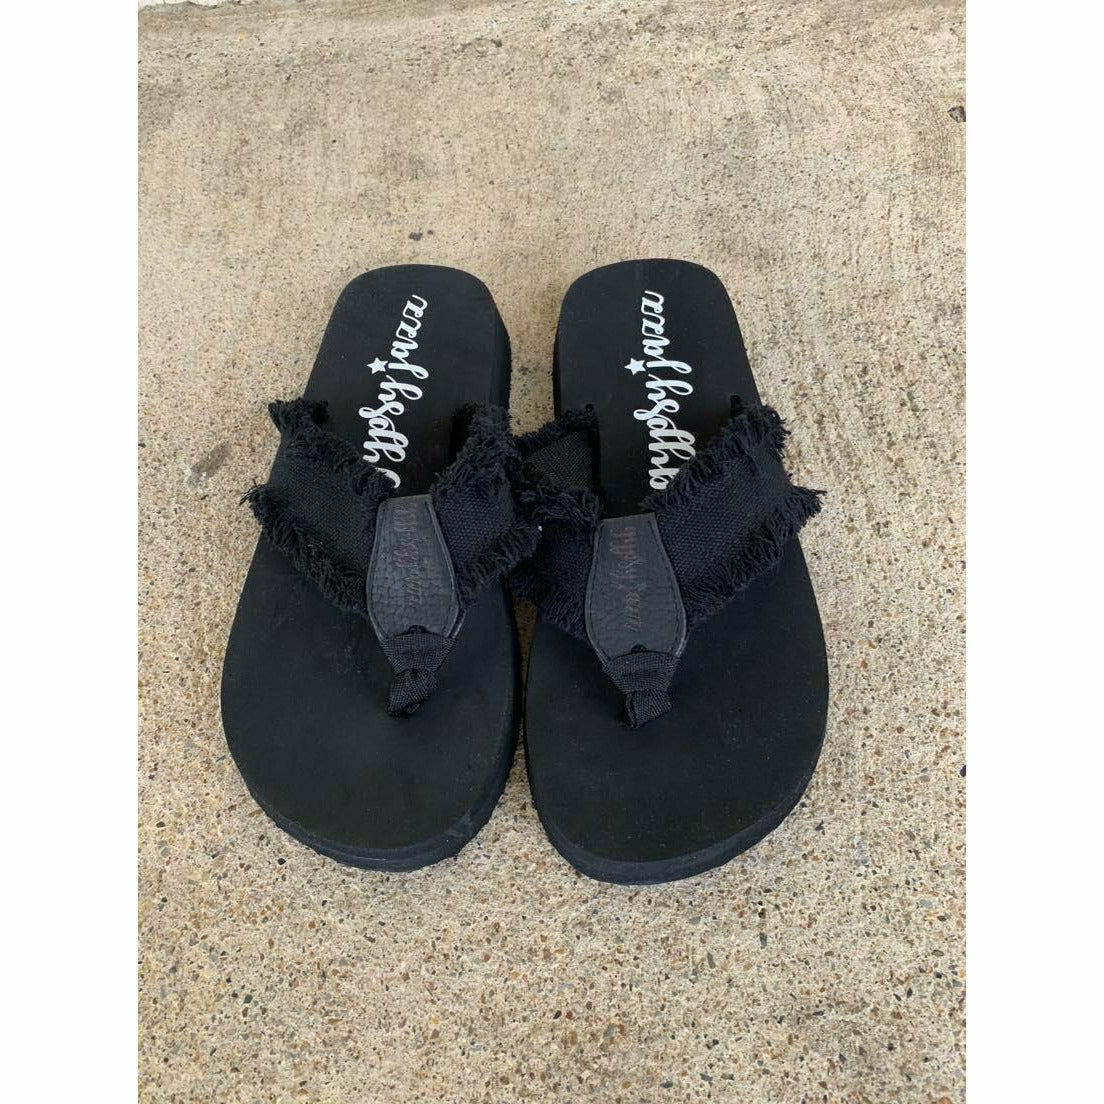 All Black Flip Flop Sandals